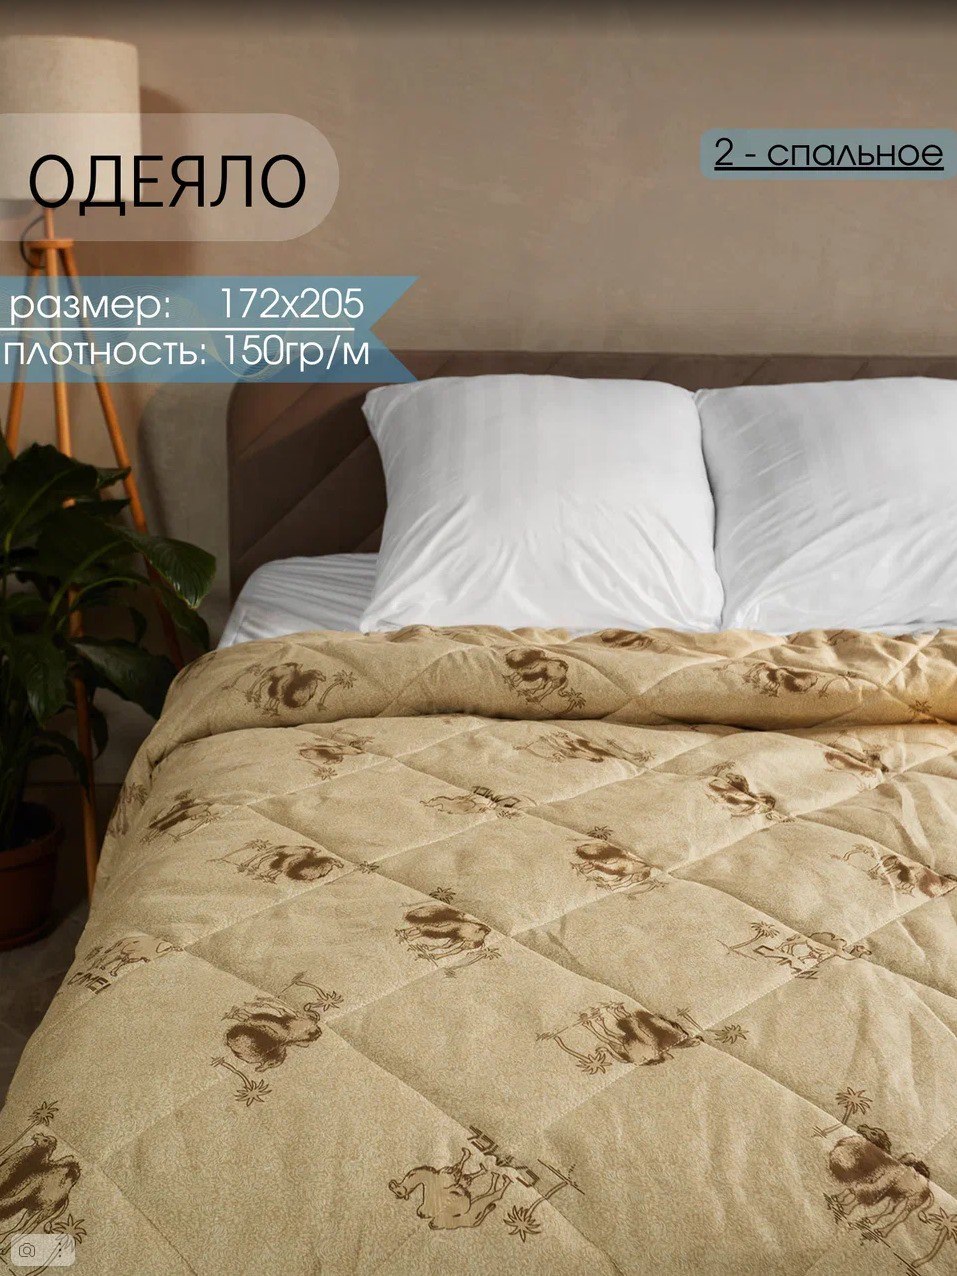 Одеяло Persona Home, 2 спальное 172x205 см, полиэстер